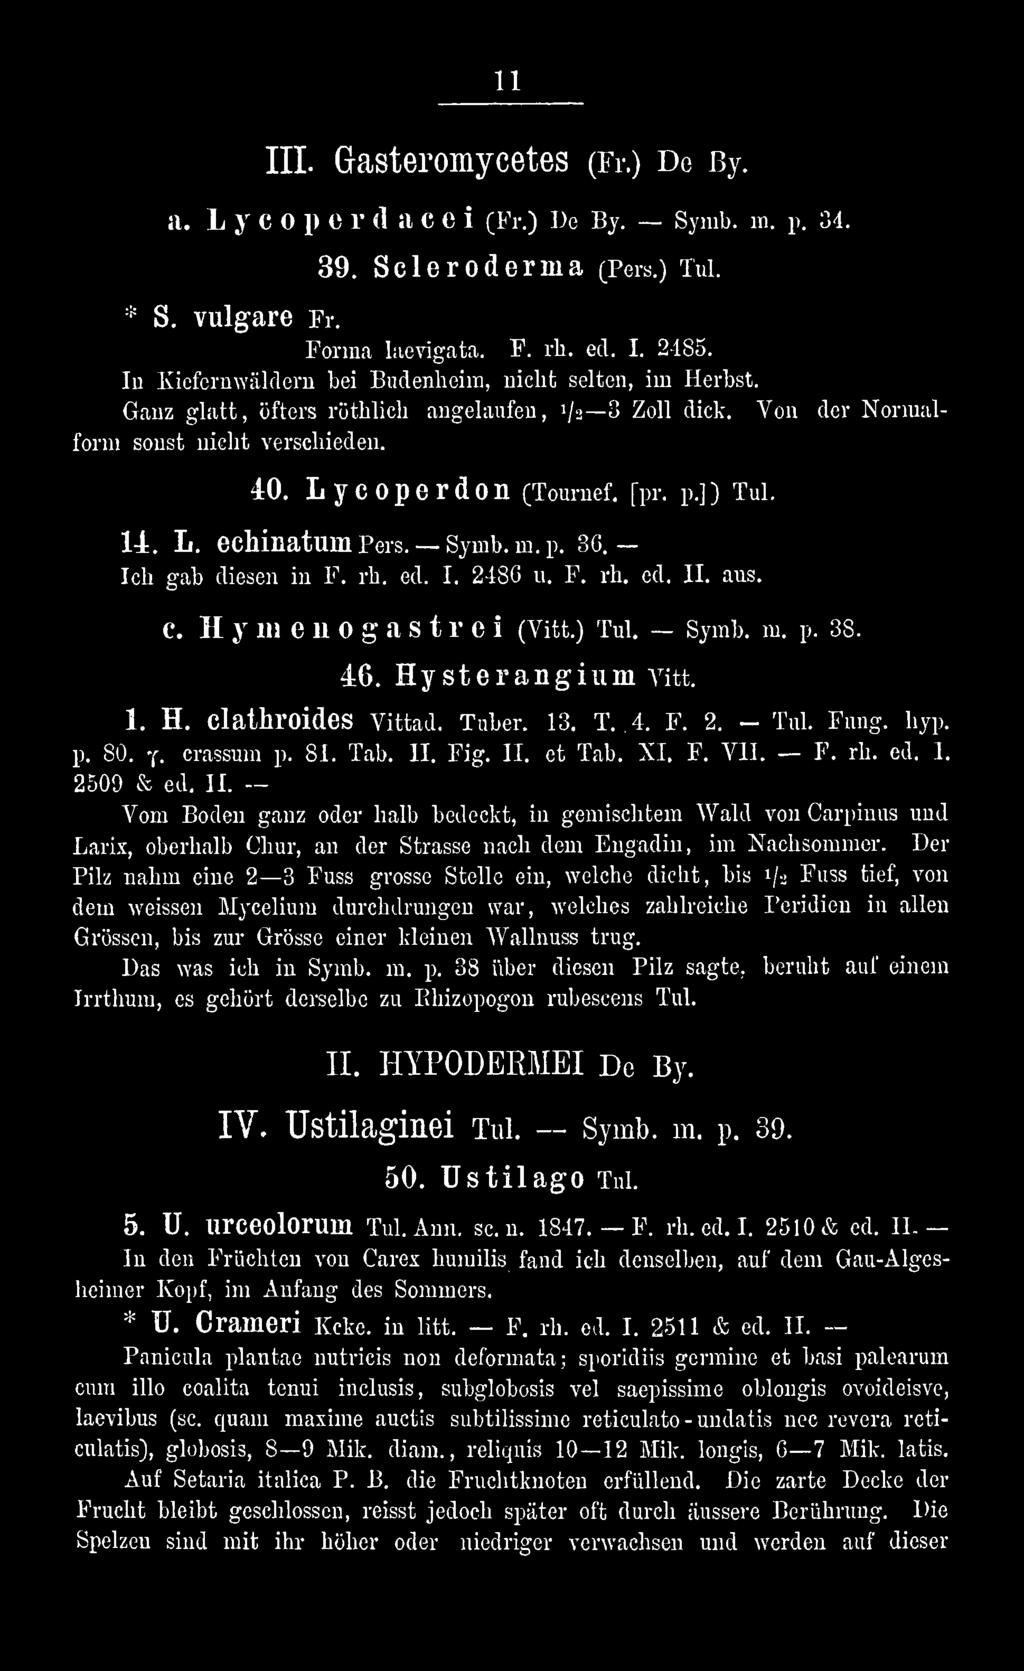 Fig. II. et Tab. XI. F. VII. F. rh. ed. I. 2509 & ed. II. Vom Boden ganz oder halb bedeckt, in gemischtem Wald von Carpinus und Larix, oberhalb Chur, an der Strasse nach dem Eugadin, im Nachsommer.